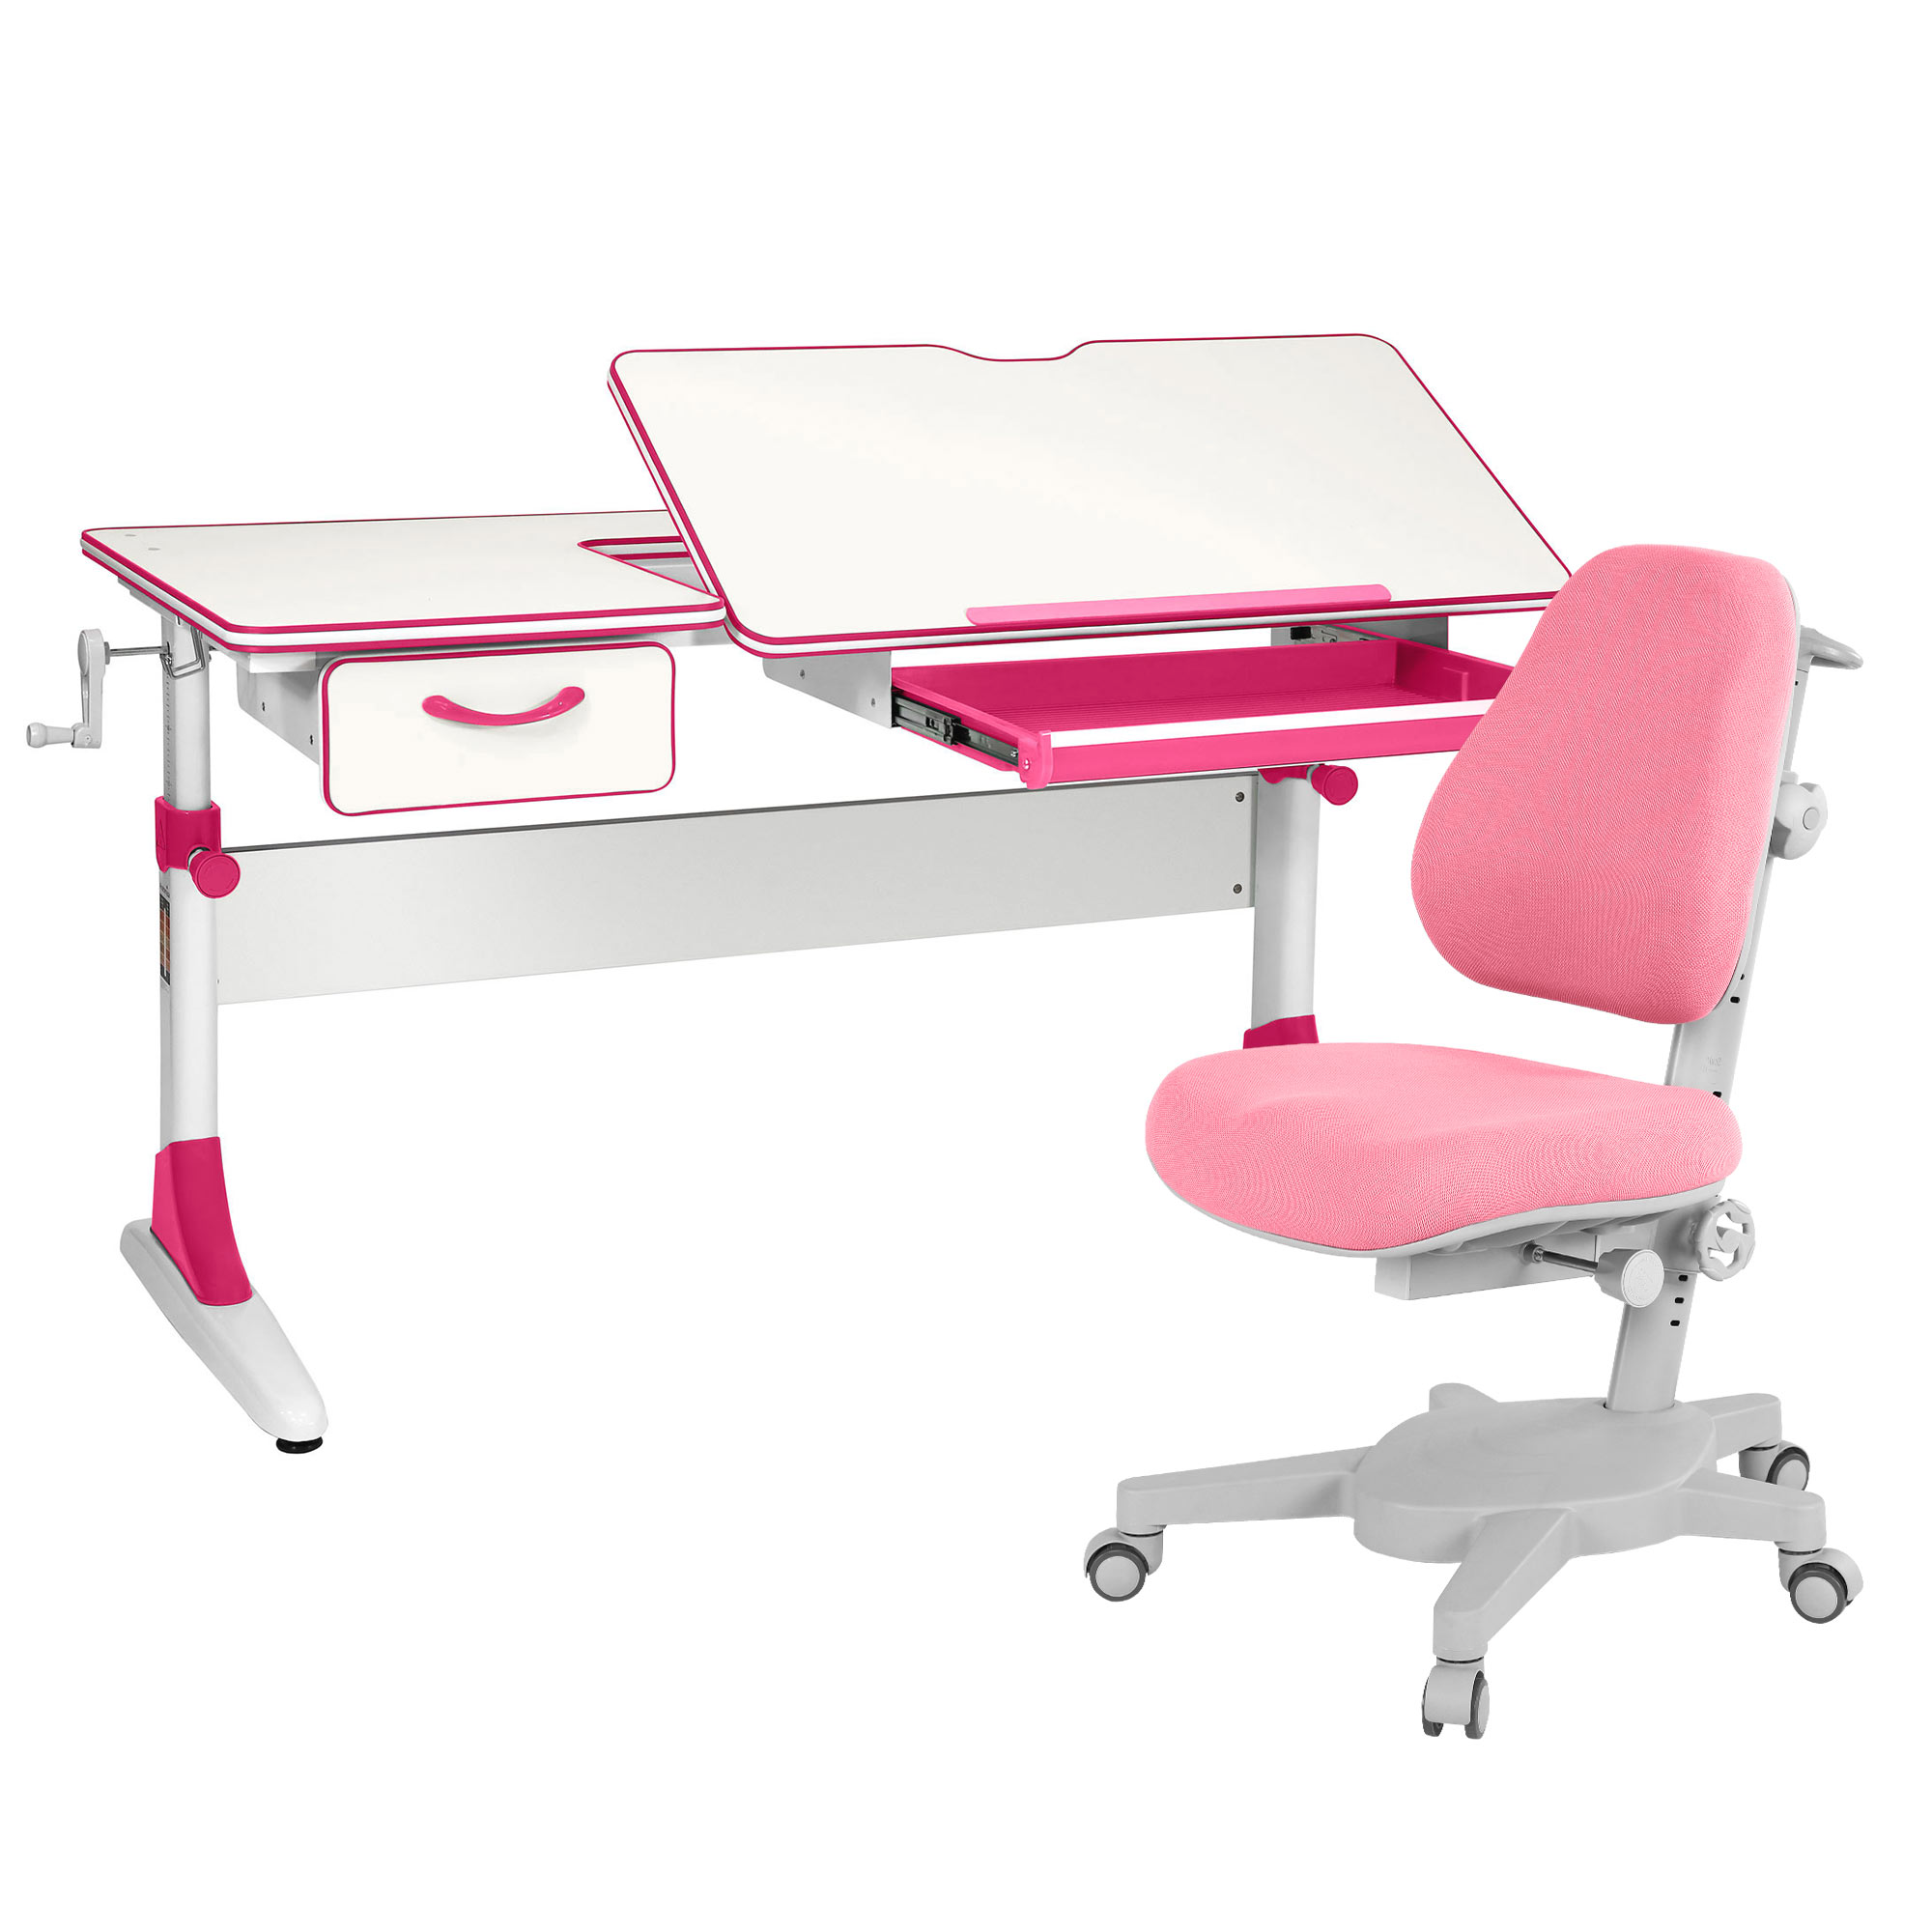 Комплект парта Anatomica Study-120 белый/розовый с розовым креслом Armata комплект парта anatomica study 100 белый розовый с розовым креслом figra